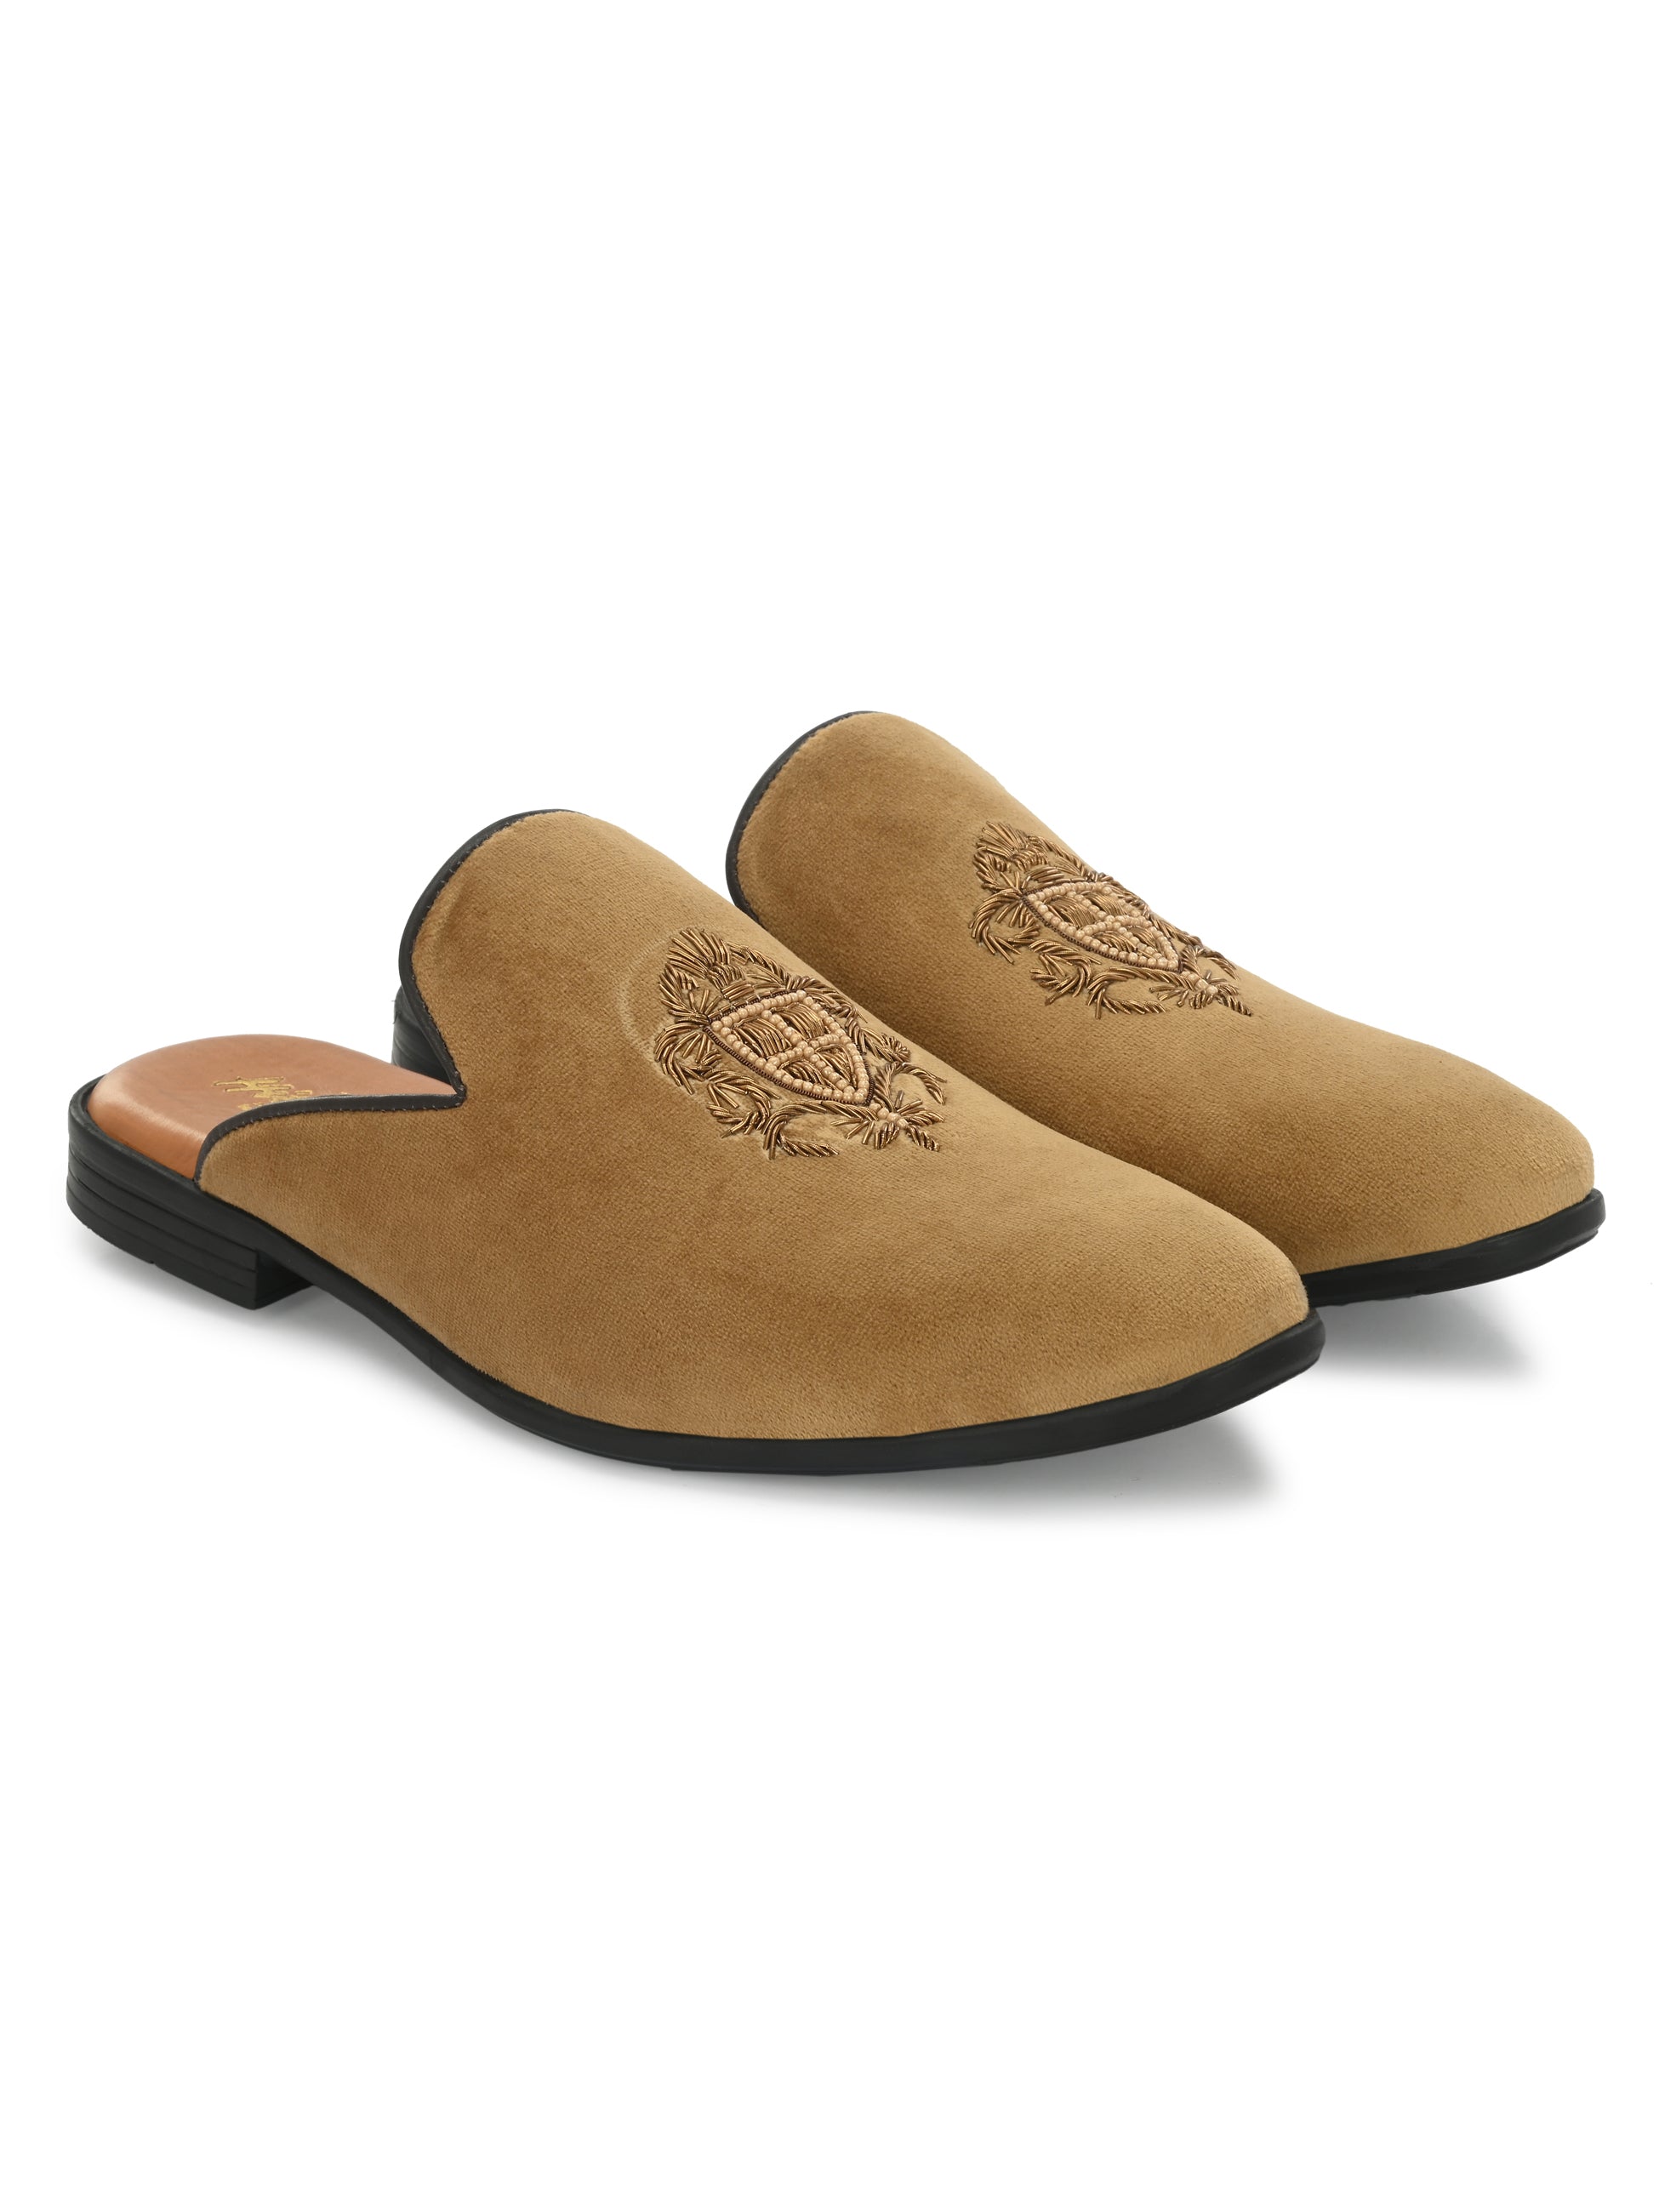 Hitz Men's Black Leather Half Shoes Flat Mule Loafers – Hitz Shoes Online